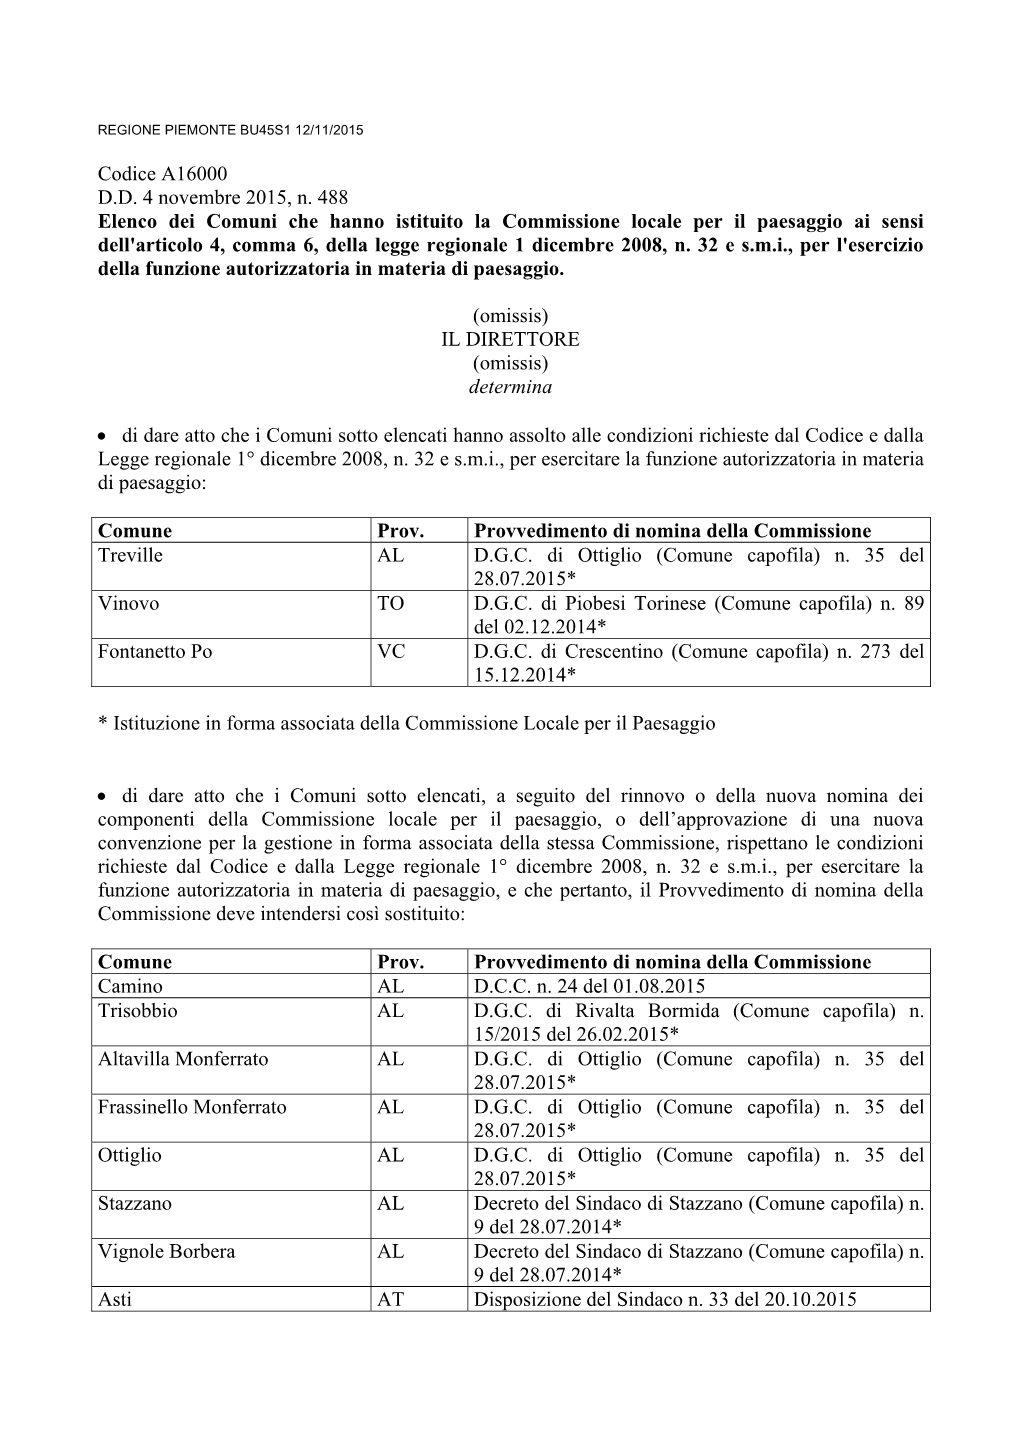 Codice A16000 D.D. 4 Novembre 2015, N. 488 Elenco Dei Comuni